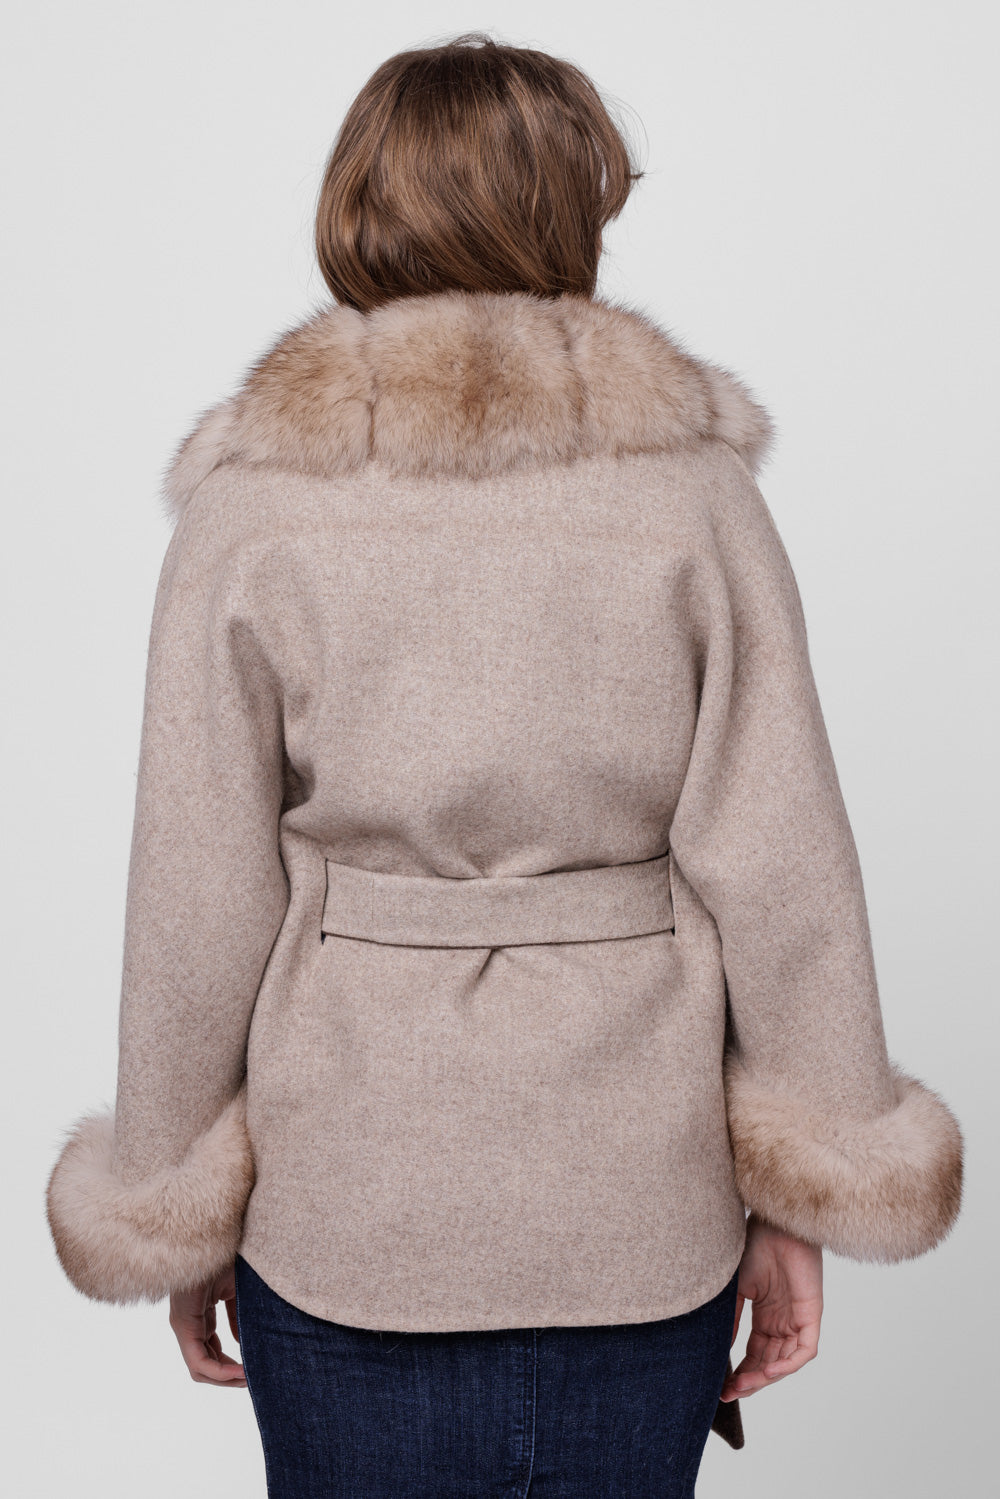 Palton din Lână Alpaca și Blană Naturală din Vulpe, model Oversized, Femei, Taupe